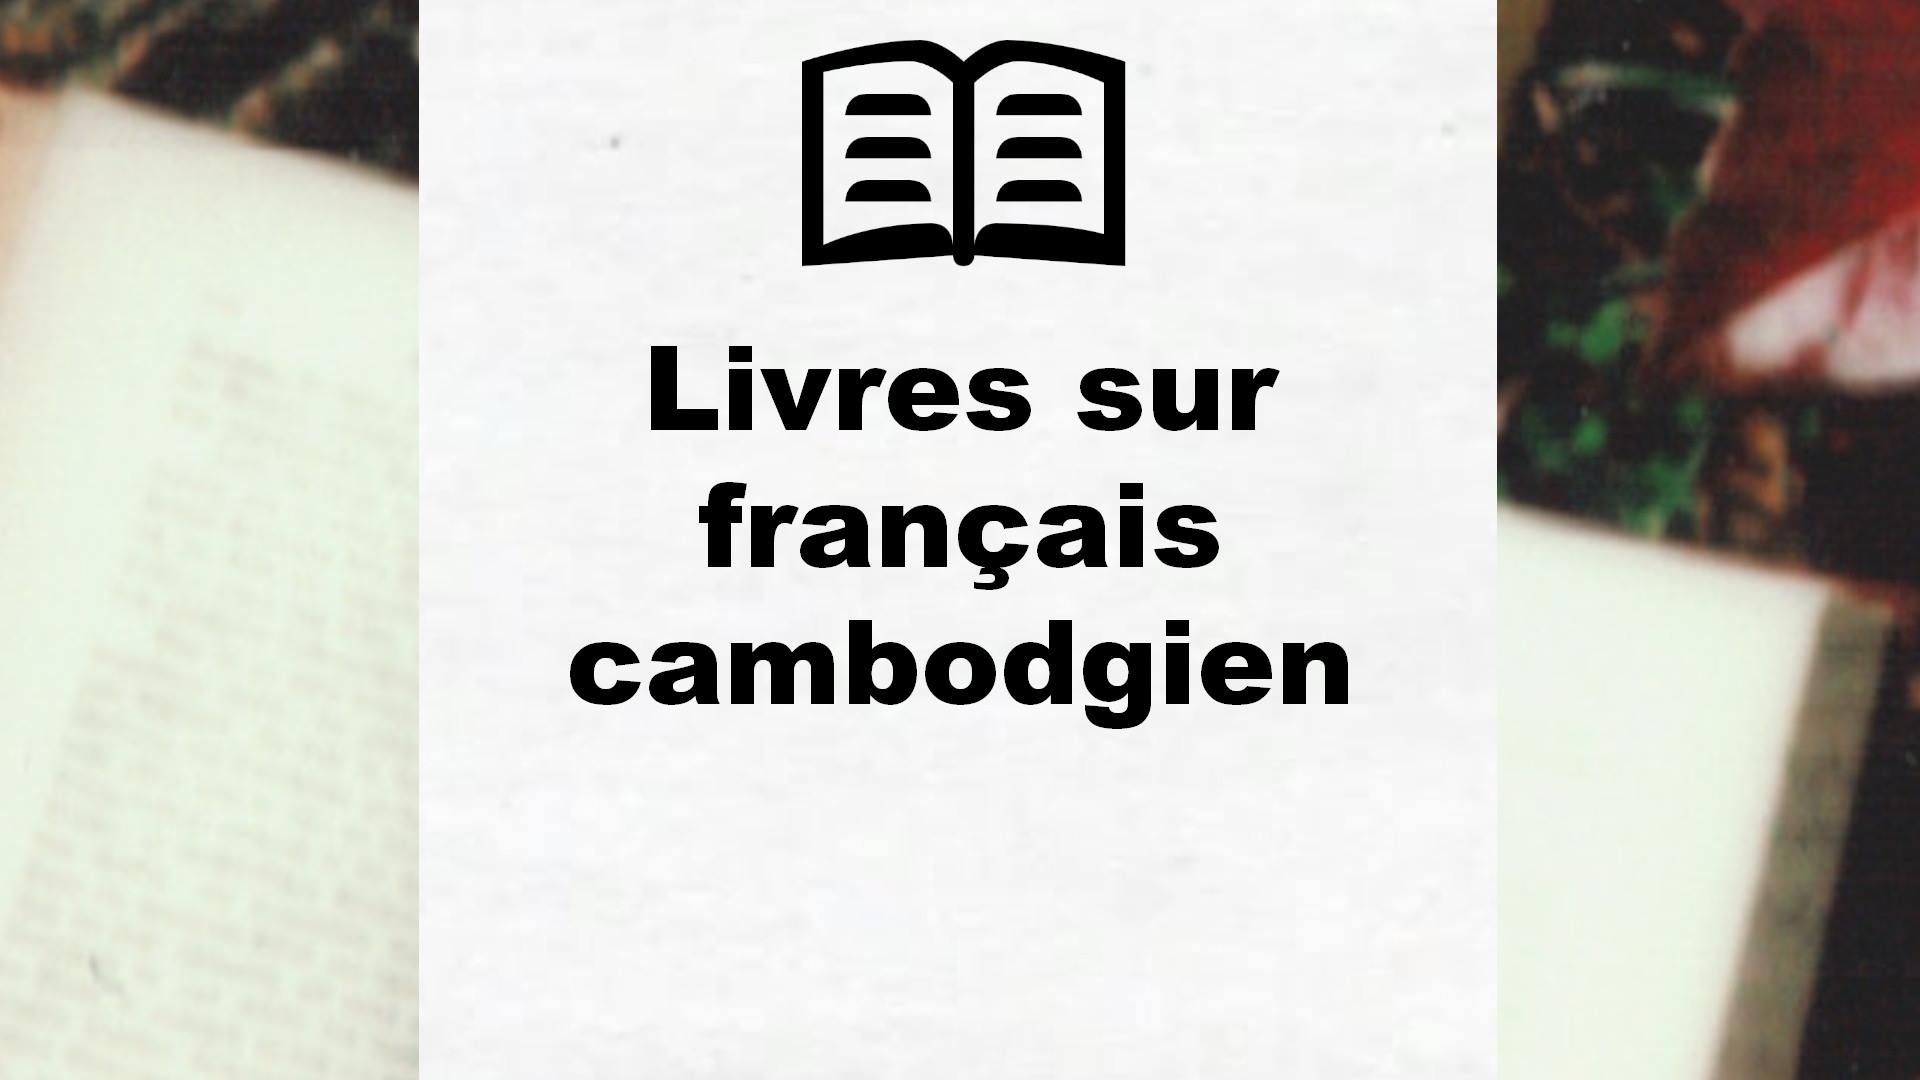 Livres sur français cambodgien